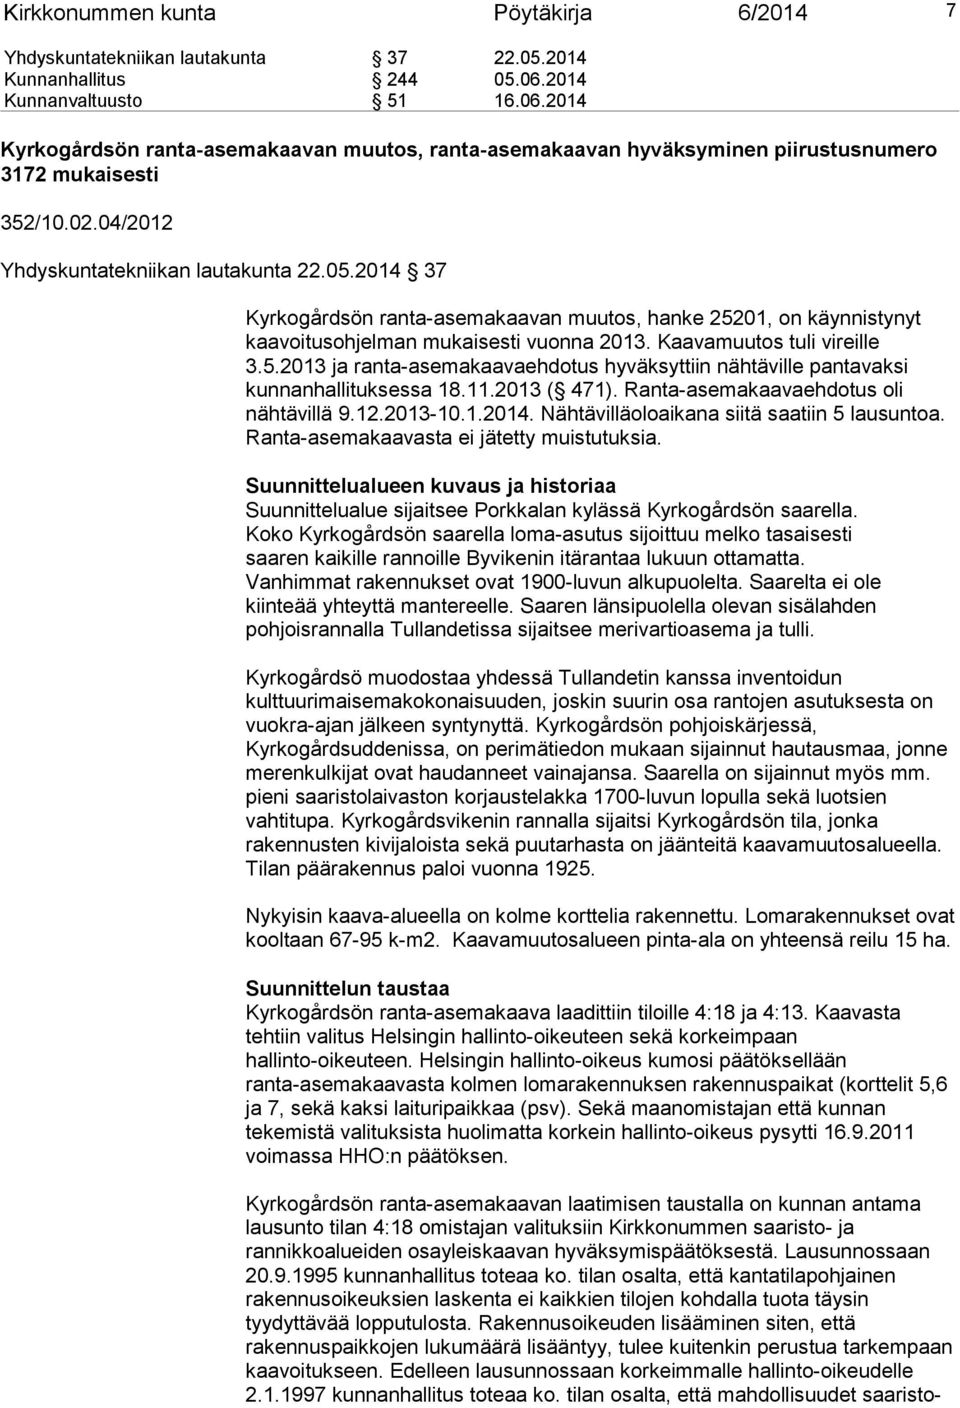 2014 37 Kyrkogårdsön ranta-asemakaavan muutos, hanke 25201, on käynnistynyt kaavoitusohjelman mukaisesti vuonna 2013. Kaavamuutos tuli vireille 3.5.2013 ja ranta-asemakaavaehdotus hyväksyttiin nähtäville pantavaksi kunnanhallituksessa 18.